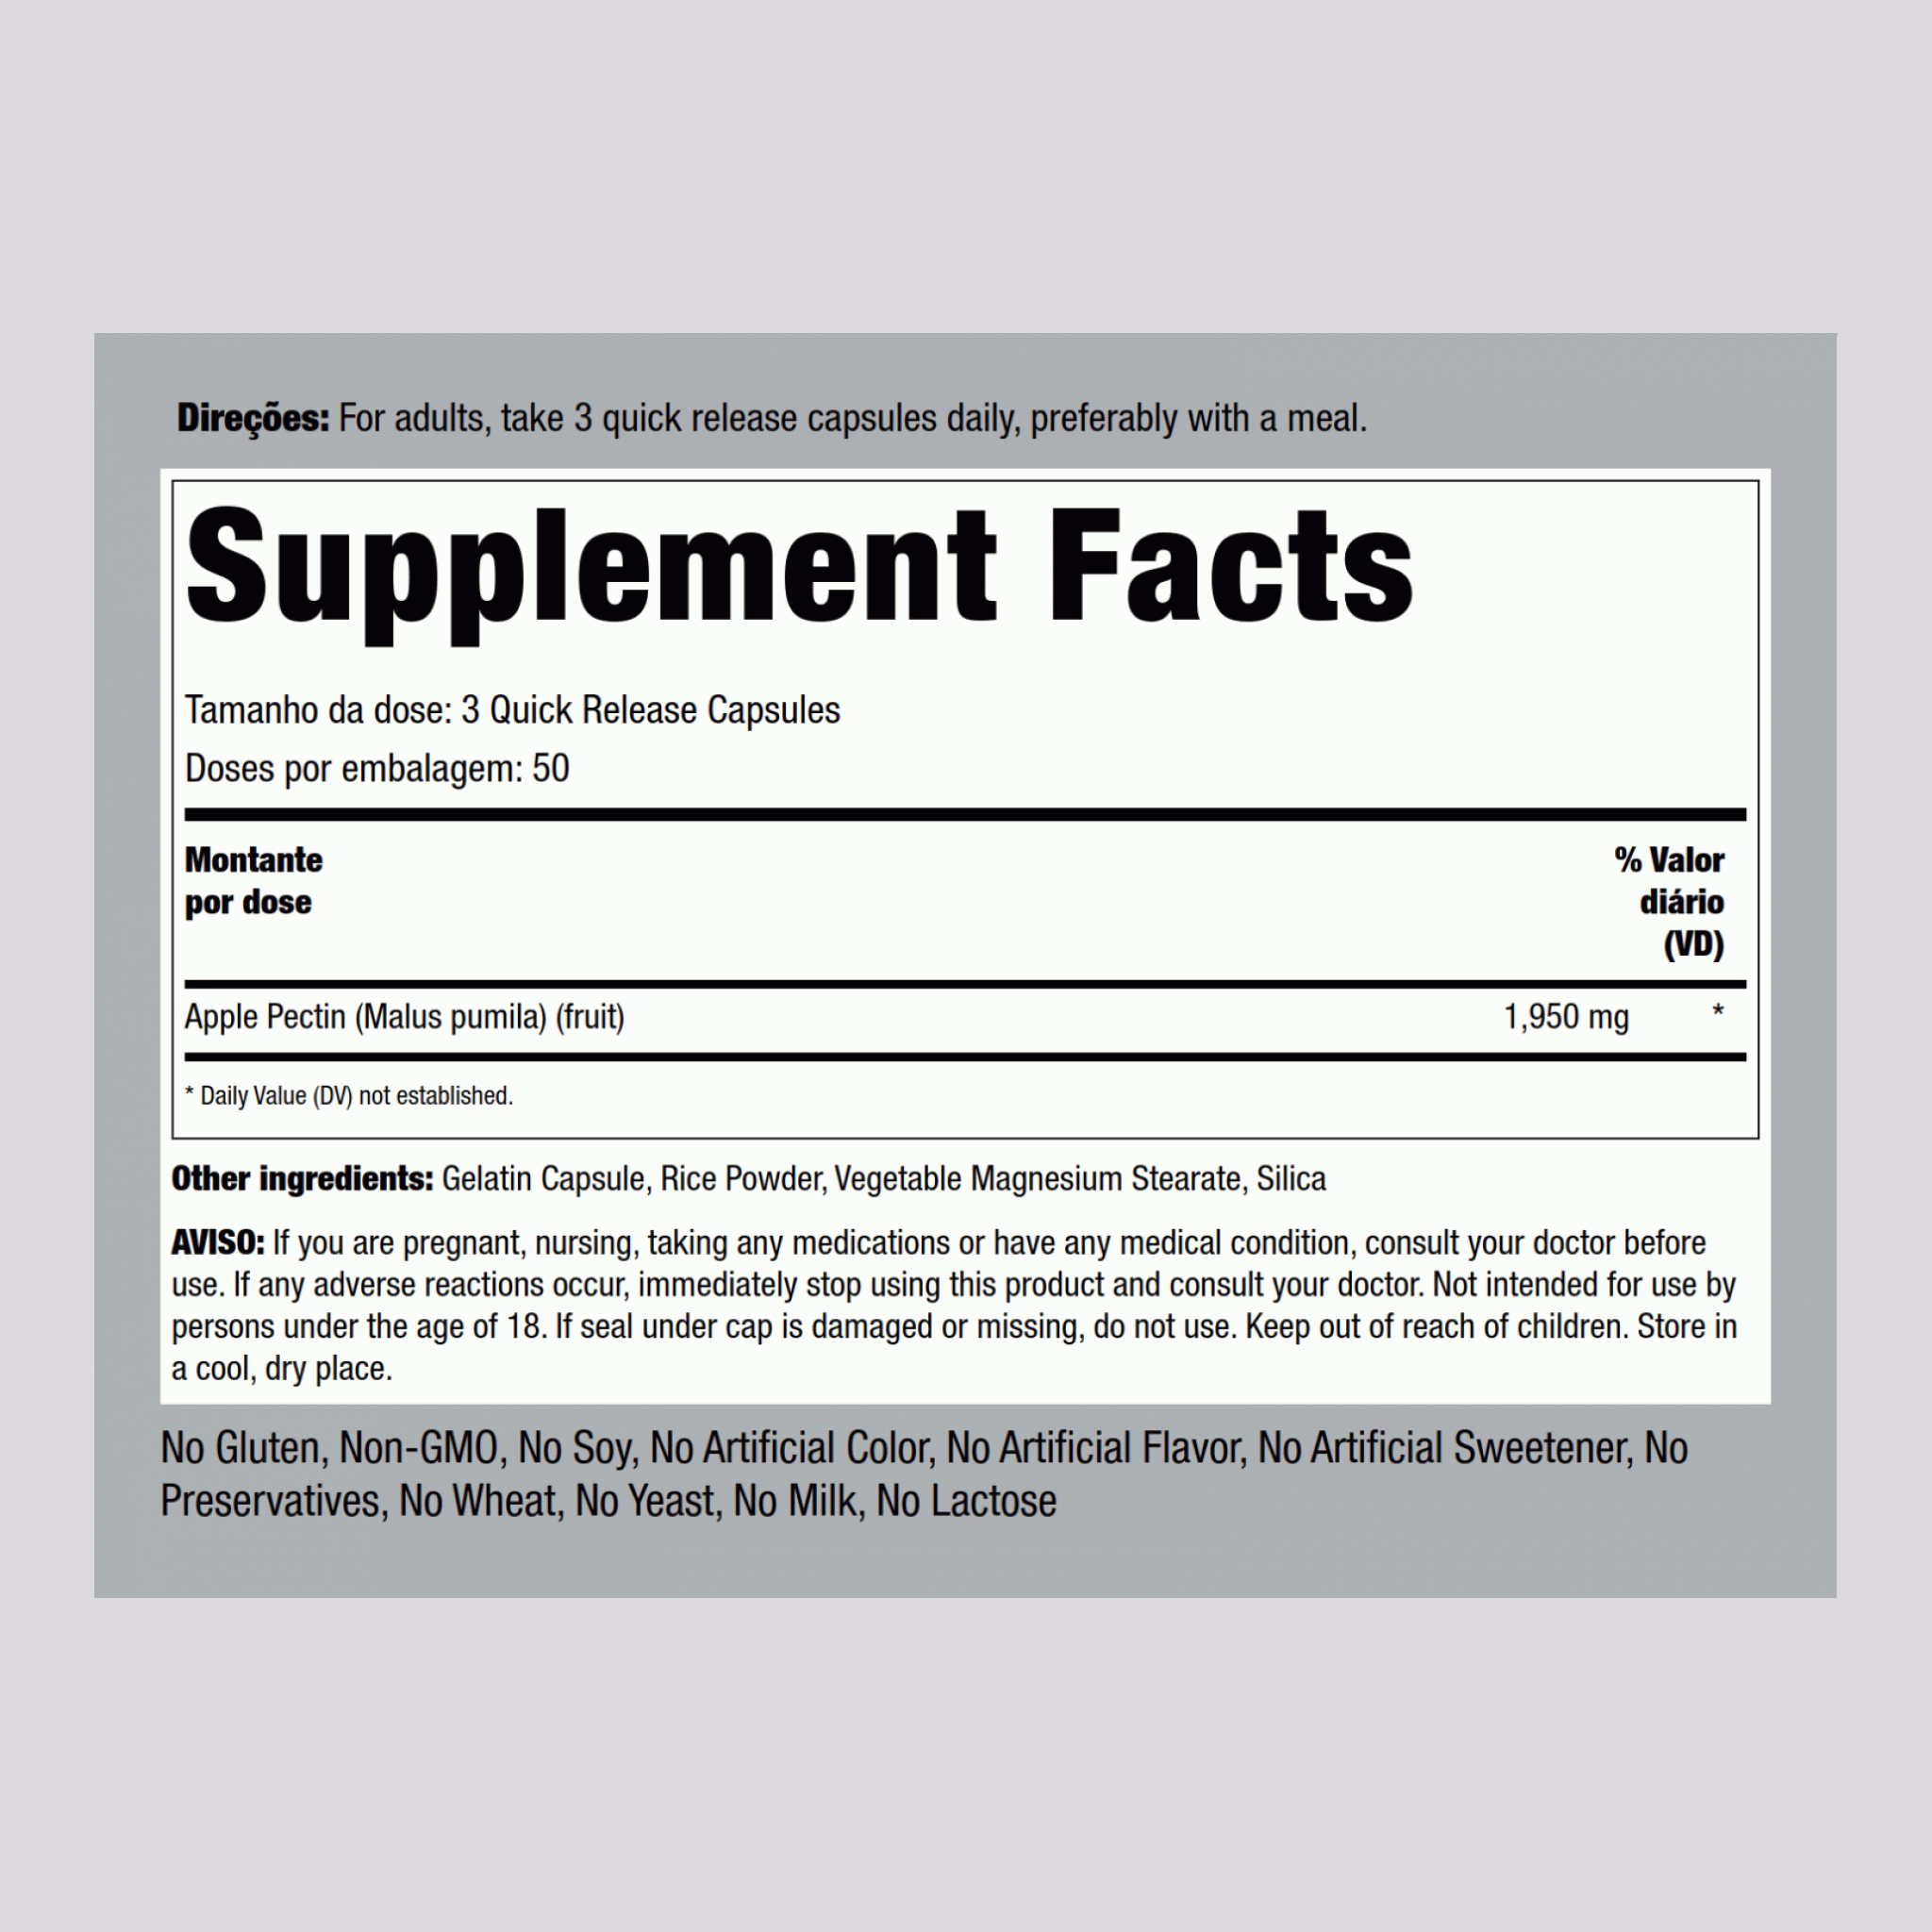 Pectina de maçã 1950 mg (por dose) 150 Cápsulas de Rápida Absorção     